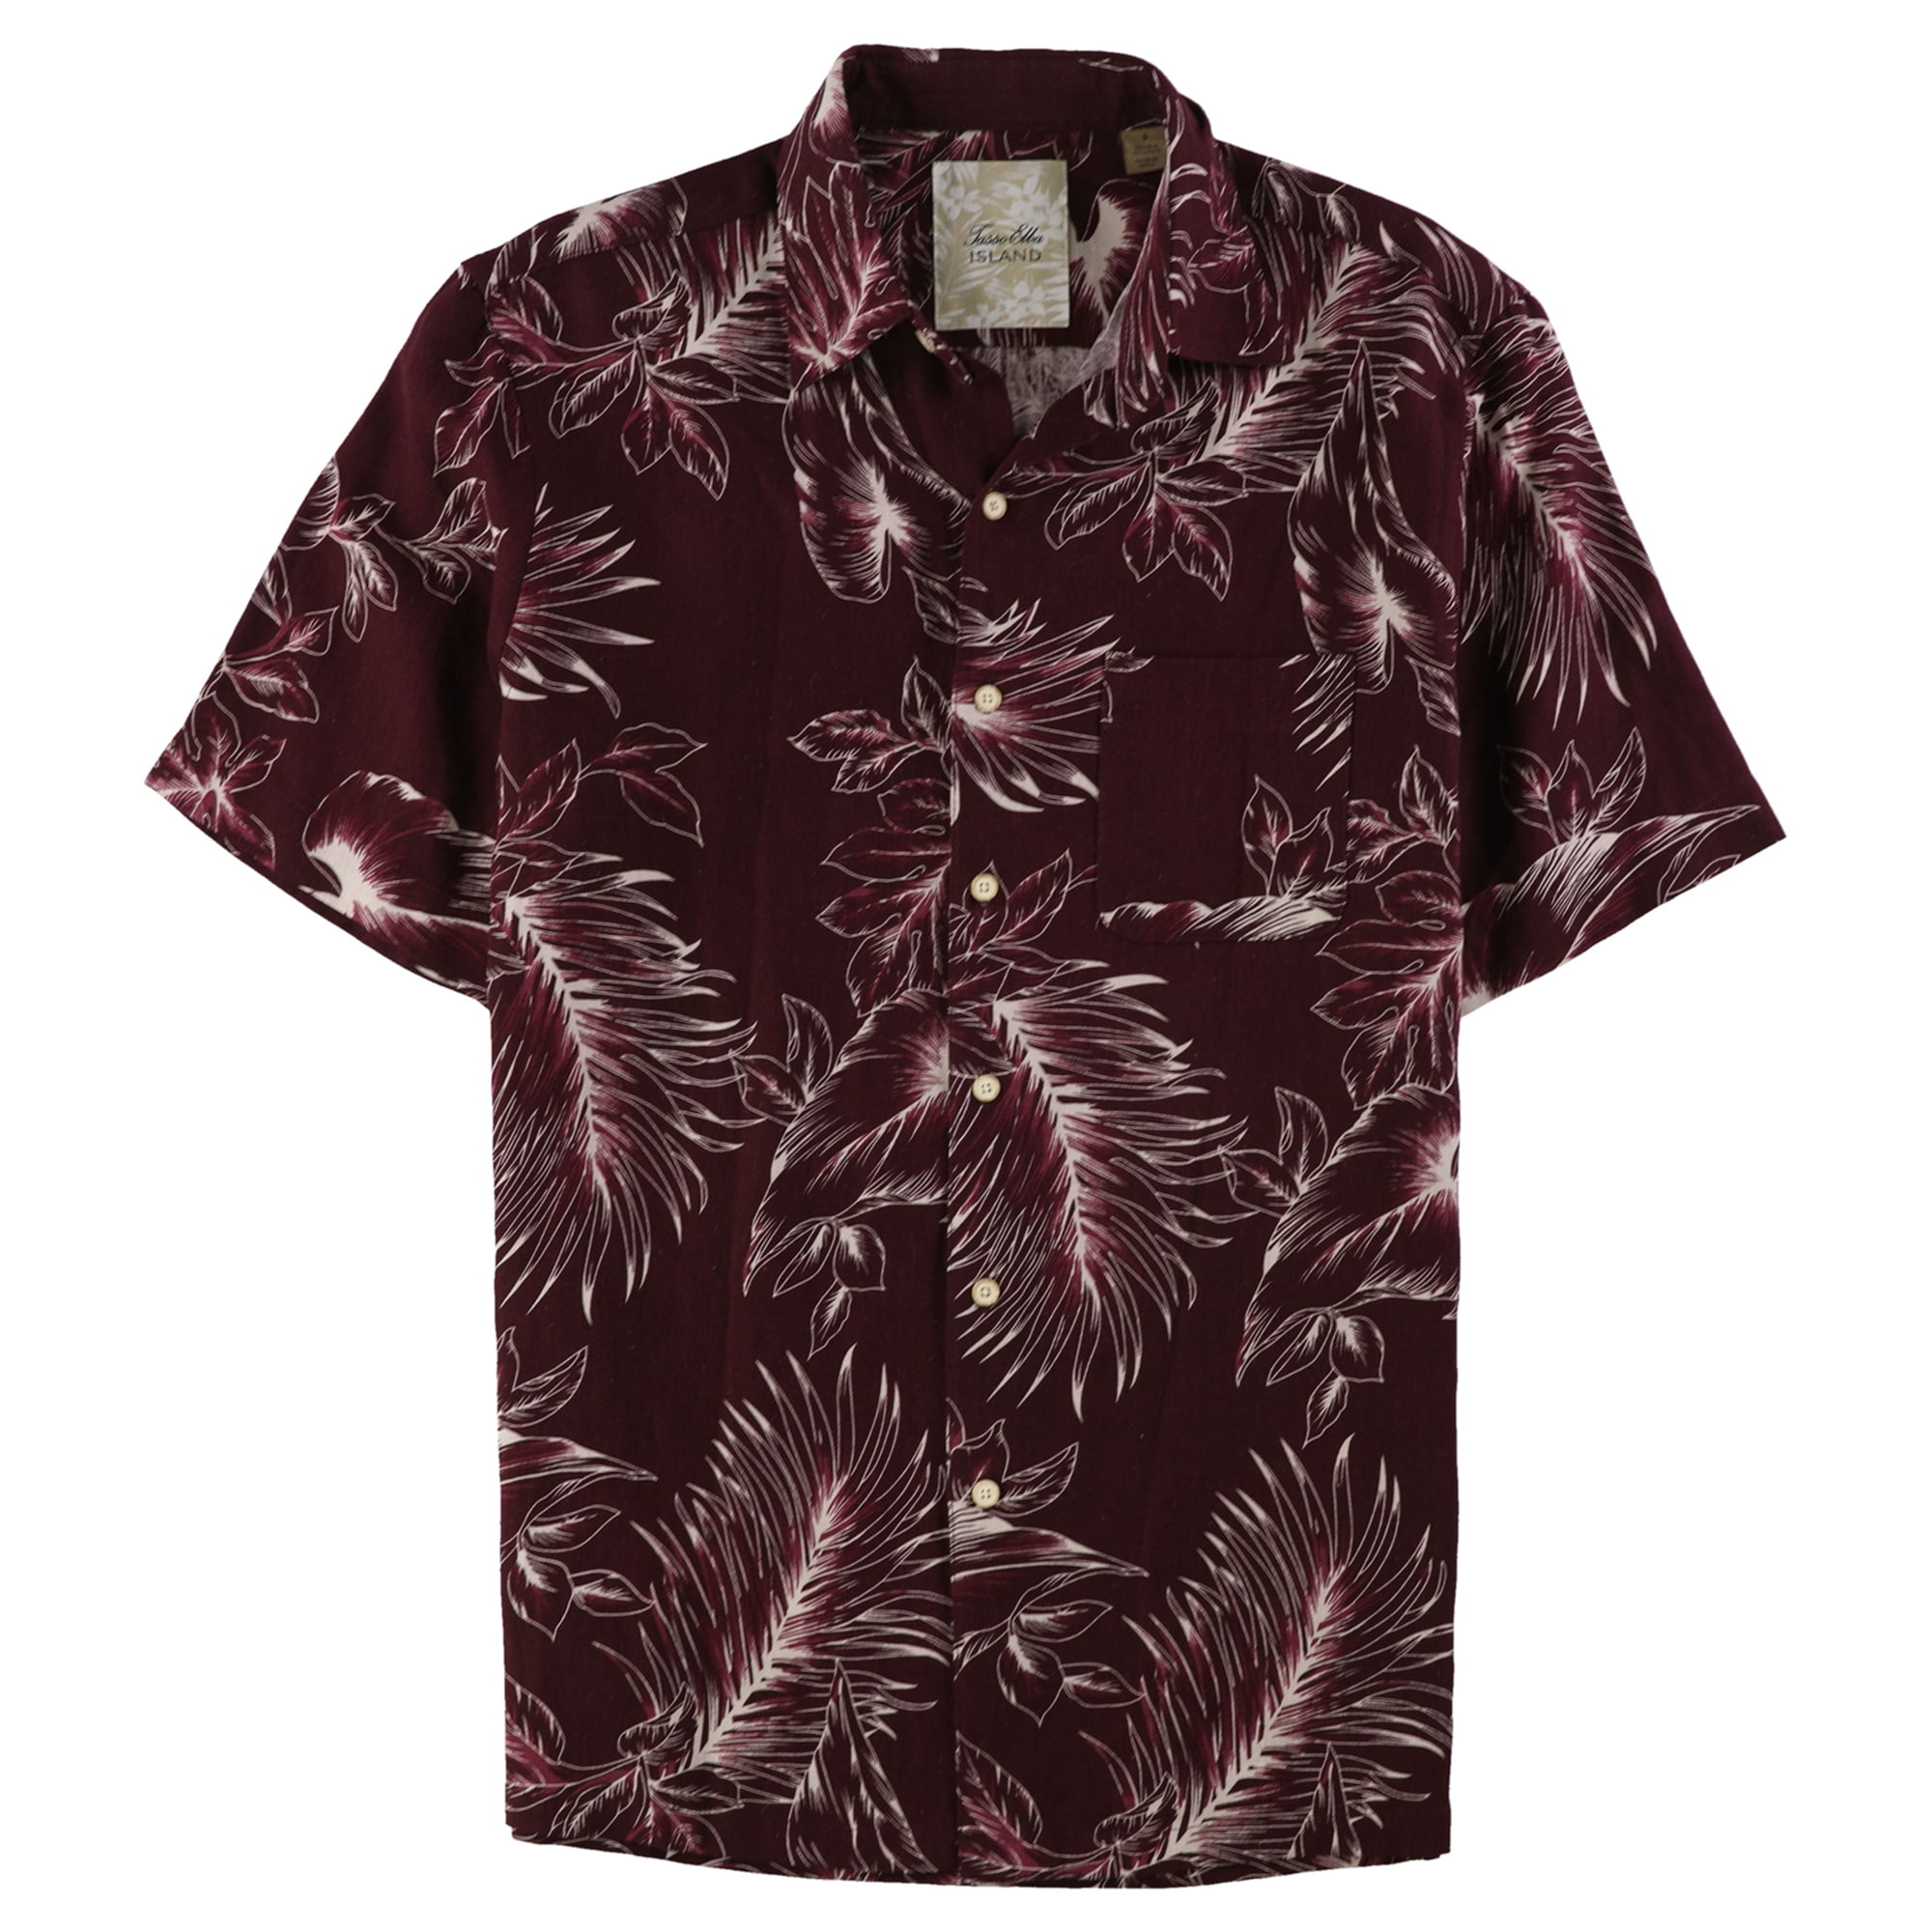 Tasso Elba Mens Shirt Blue Size XL Silk Tropical Print Button Down $65 #013 